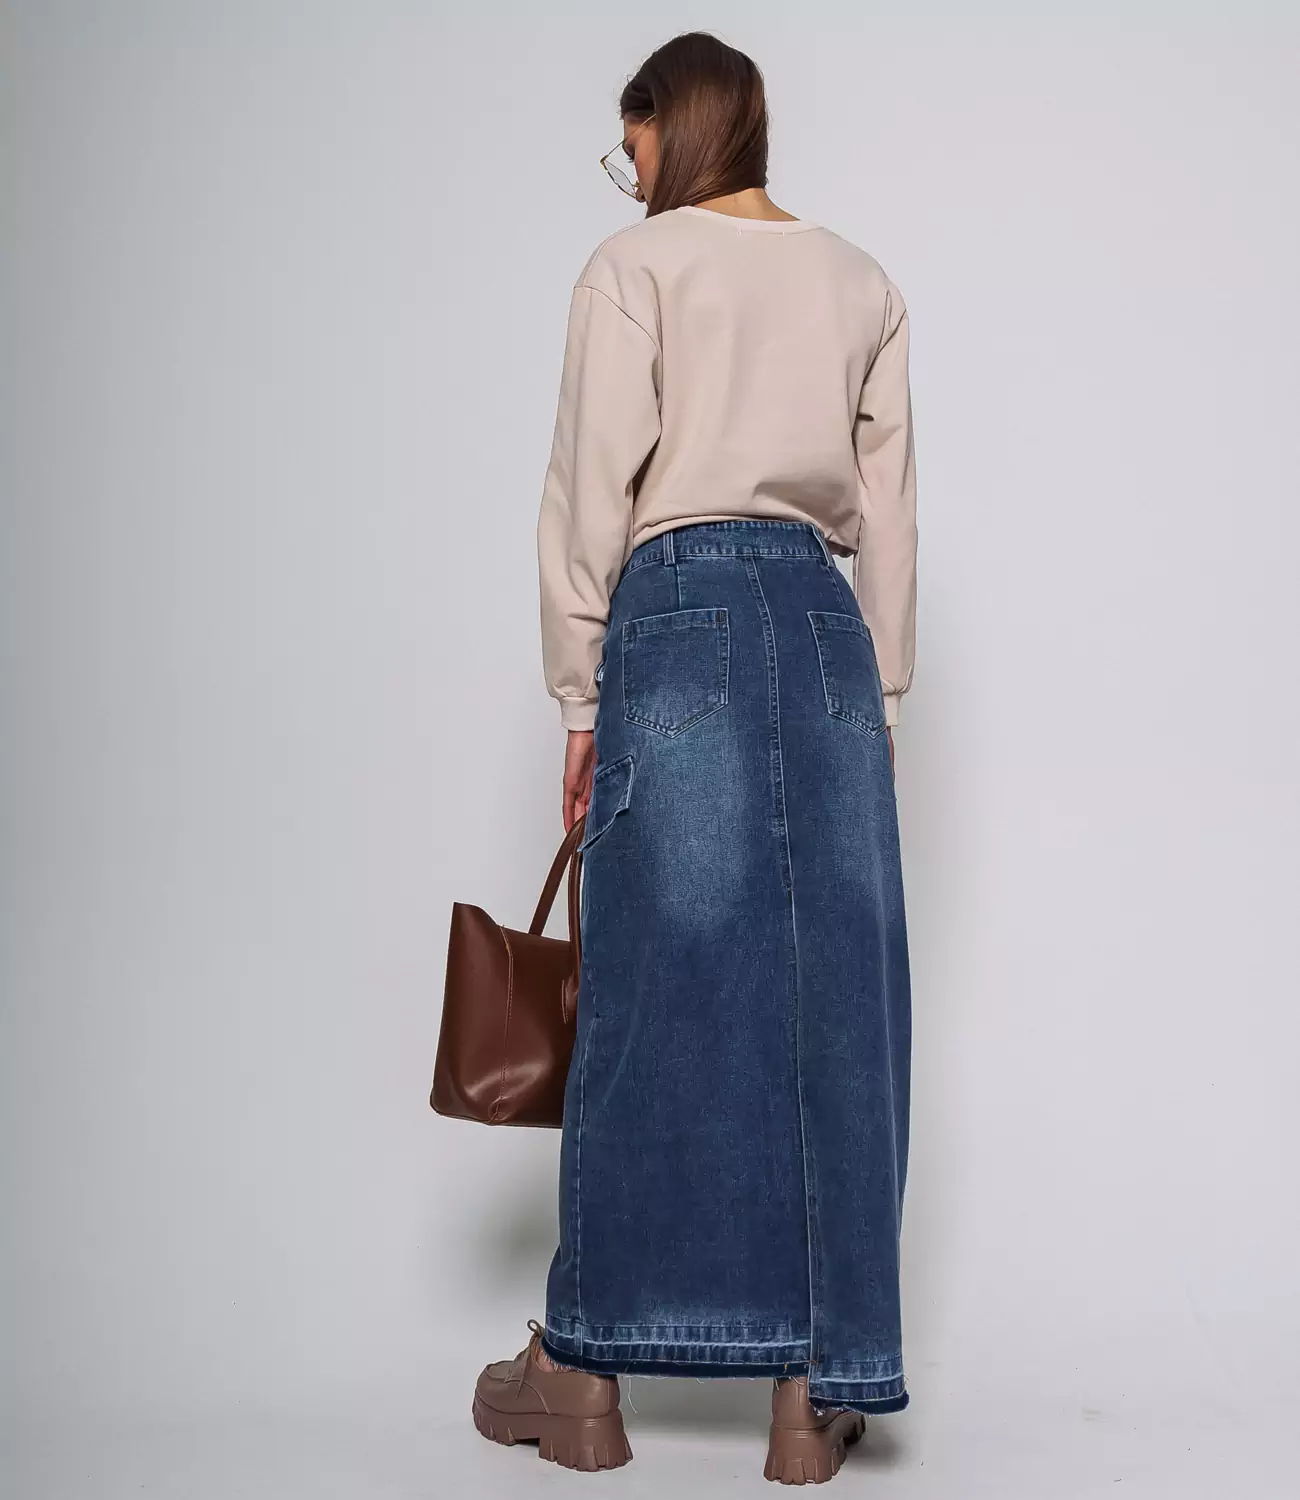 Как носить длинную джинсовую юбку, чтобы не быть старомодной: учимся у фэшн-инфлюенсеров | theGirl